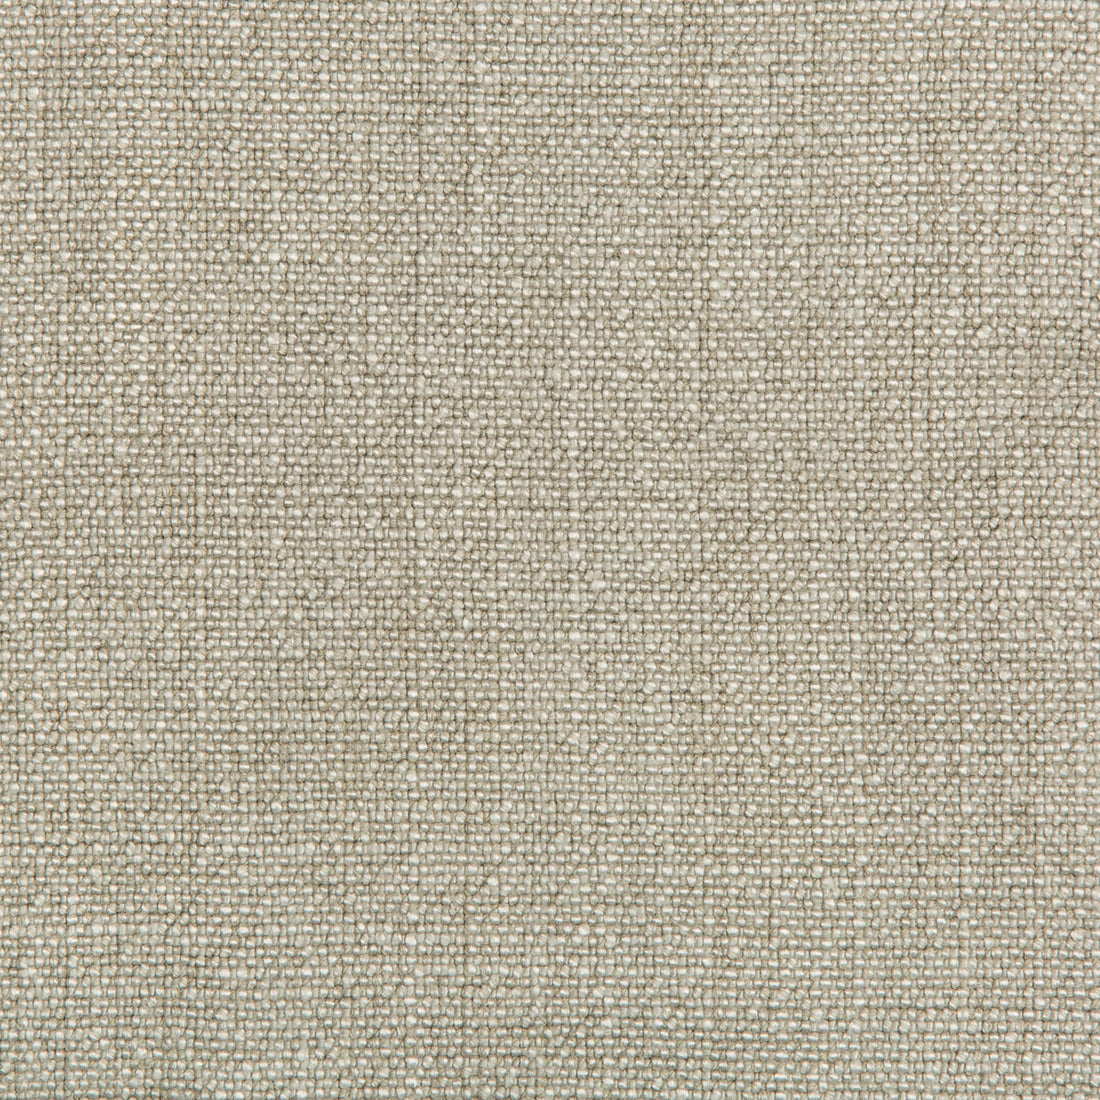 Kravet Basics fabric in 35189-1111 color - pattern 35189.1111.0 - by Kravet Basics